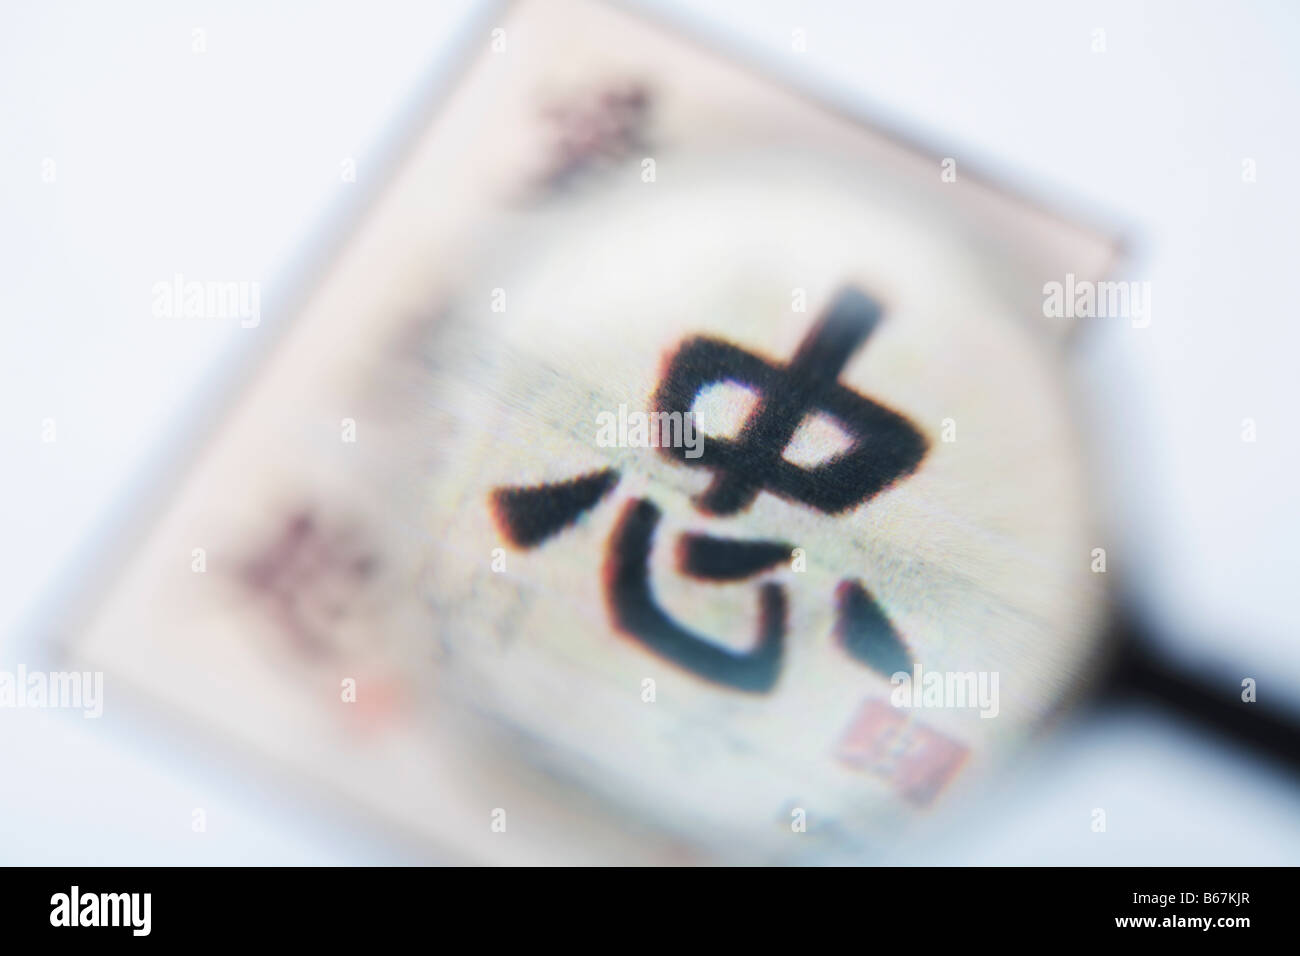 L'écriture chinoise vu à travers une loupe Banque D'Images